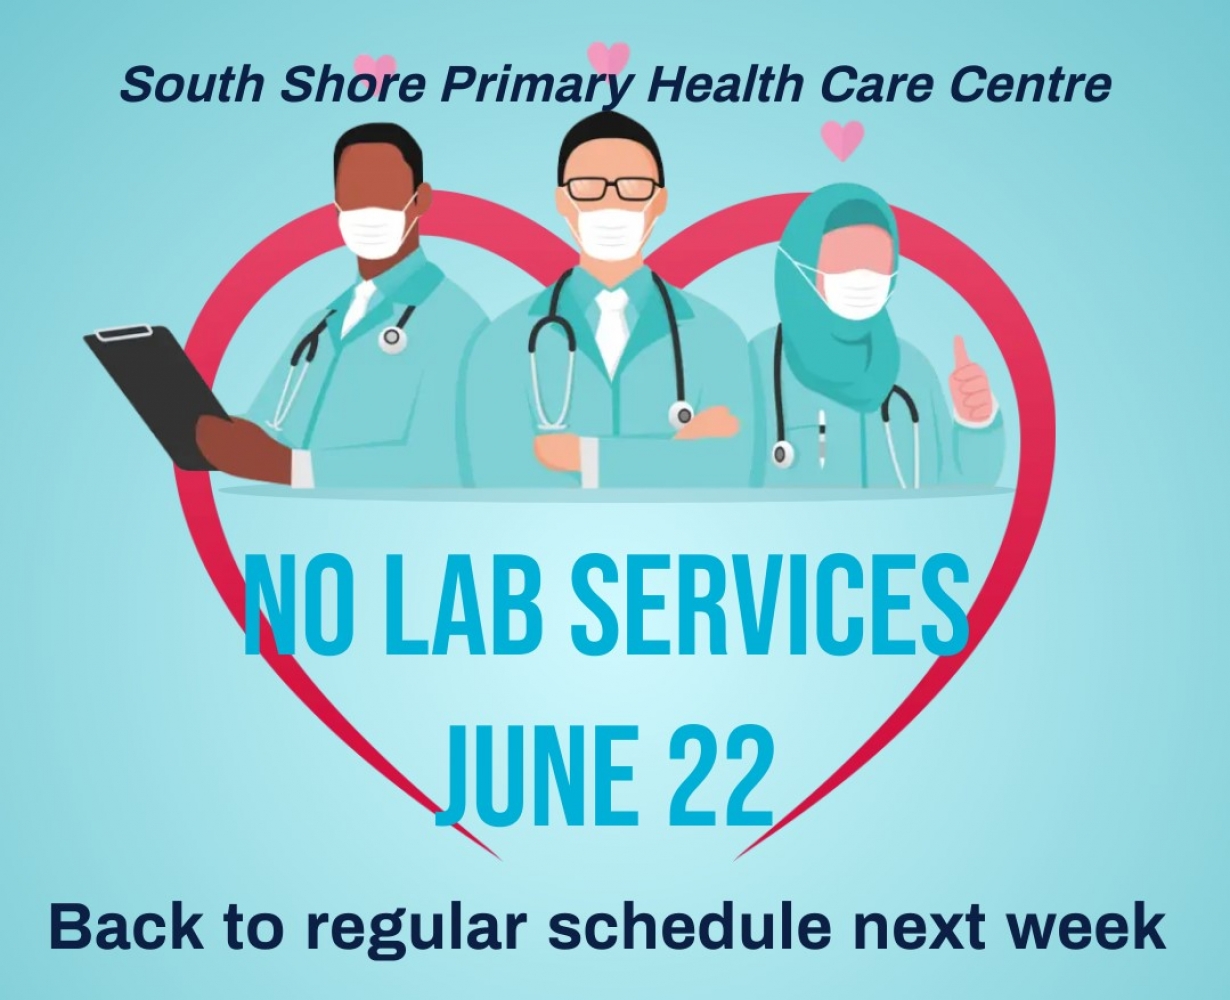 No Lab Services - Jun 22